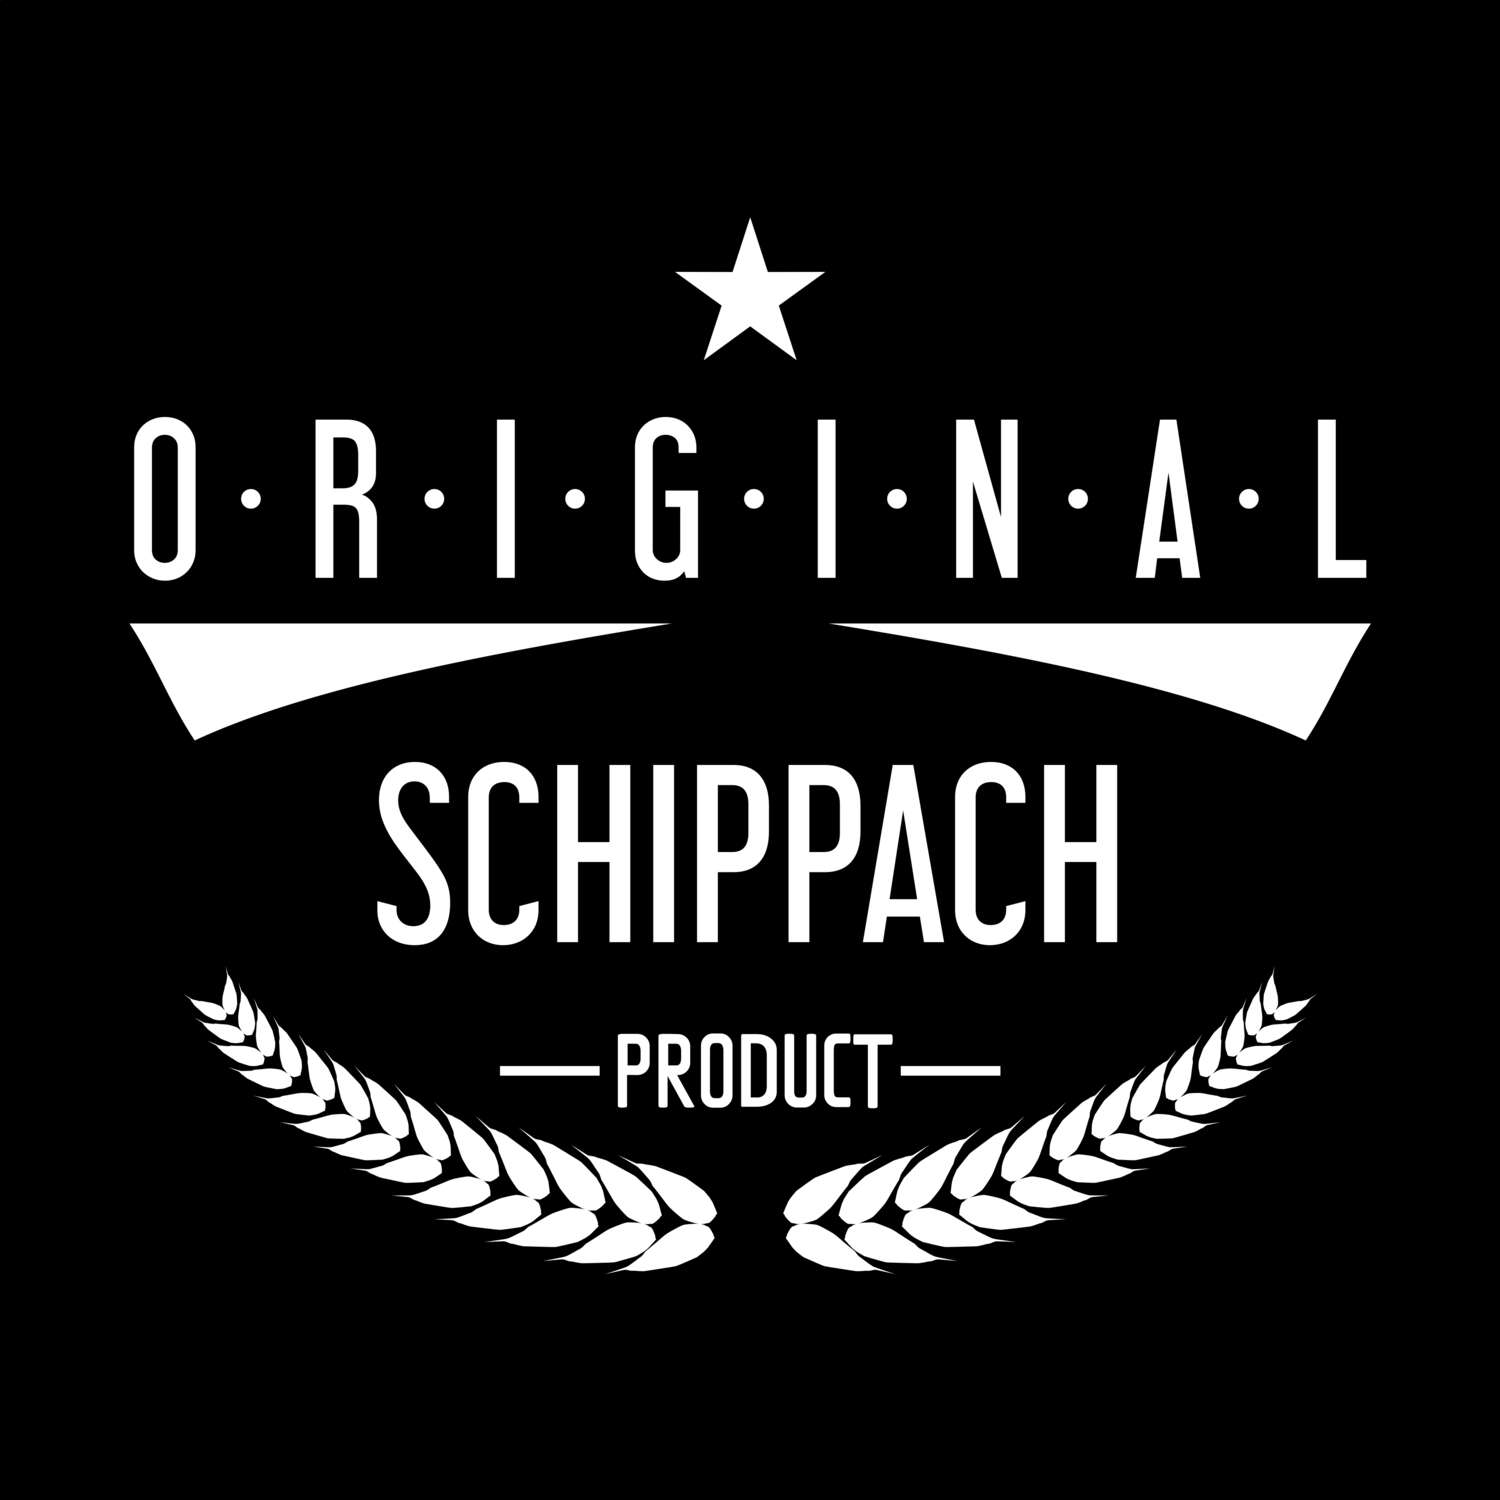 Schippach T-Shirt »Original Product«